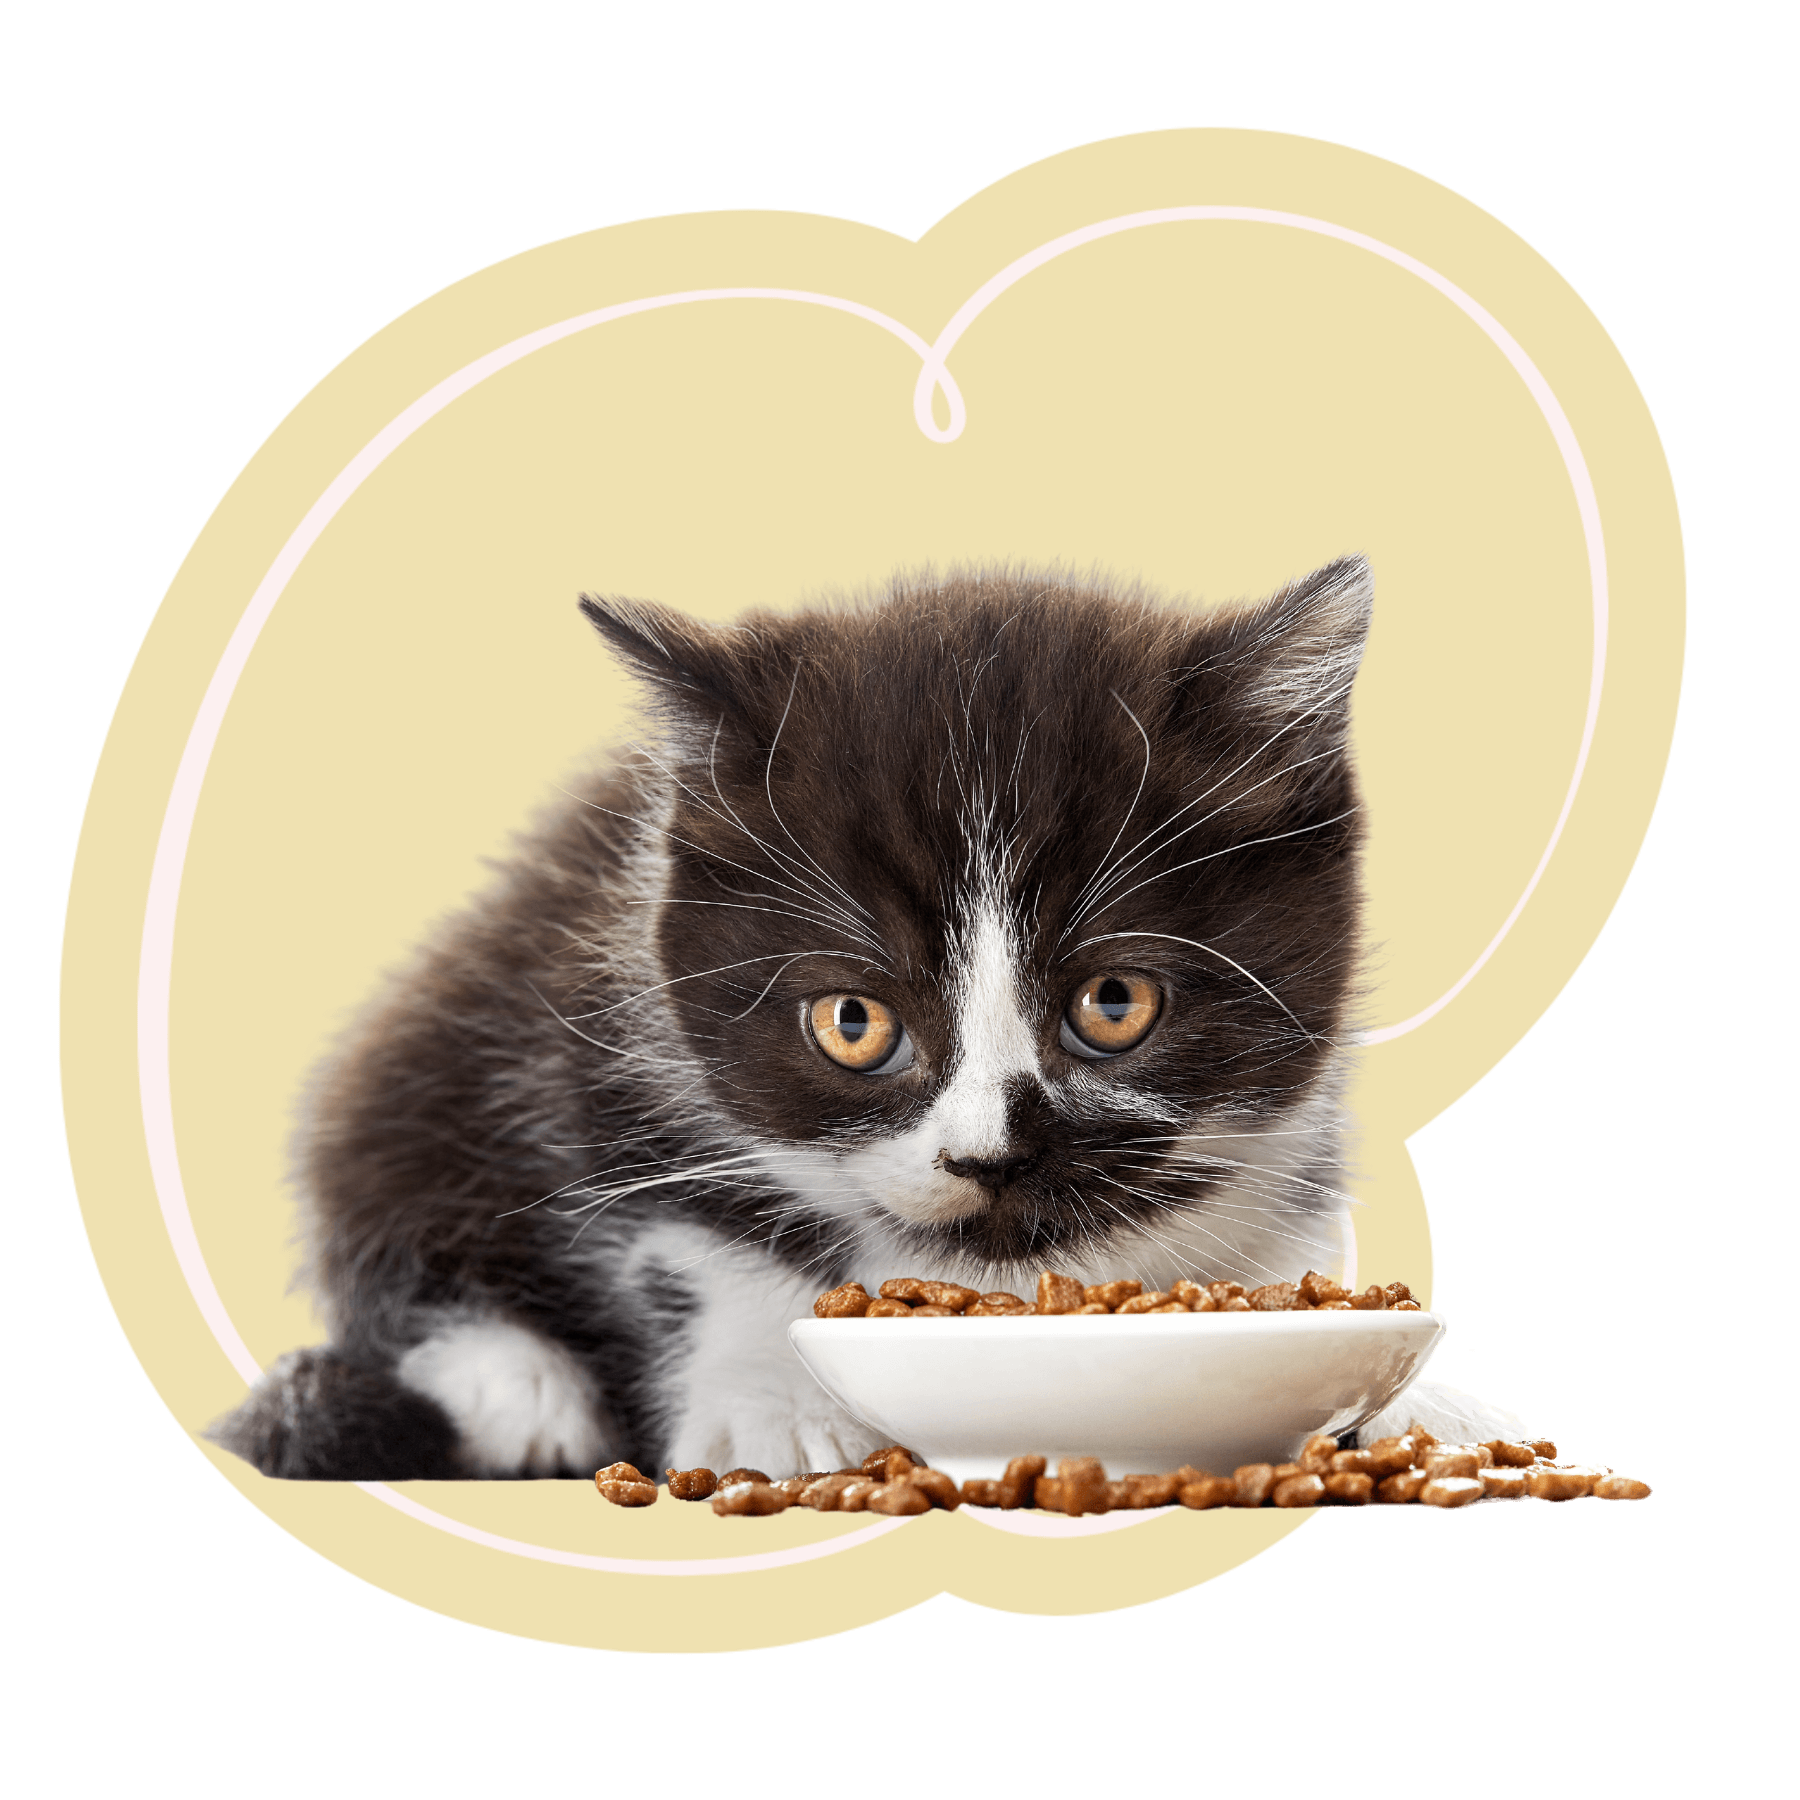 kitten eating food<br />
